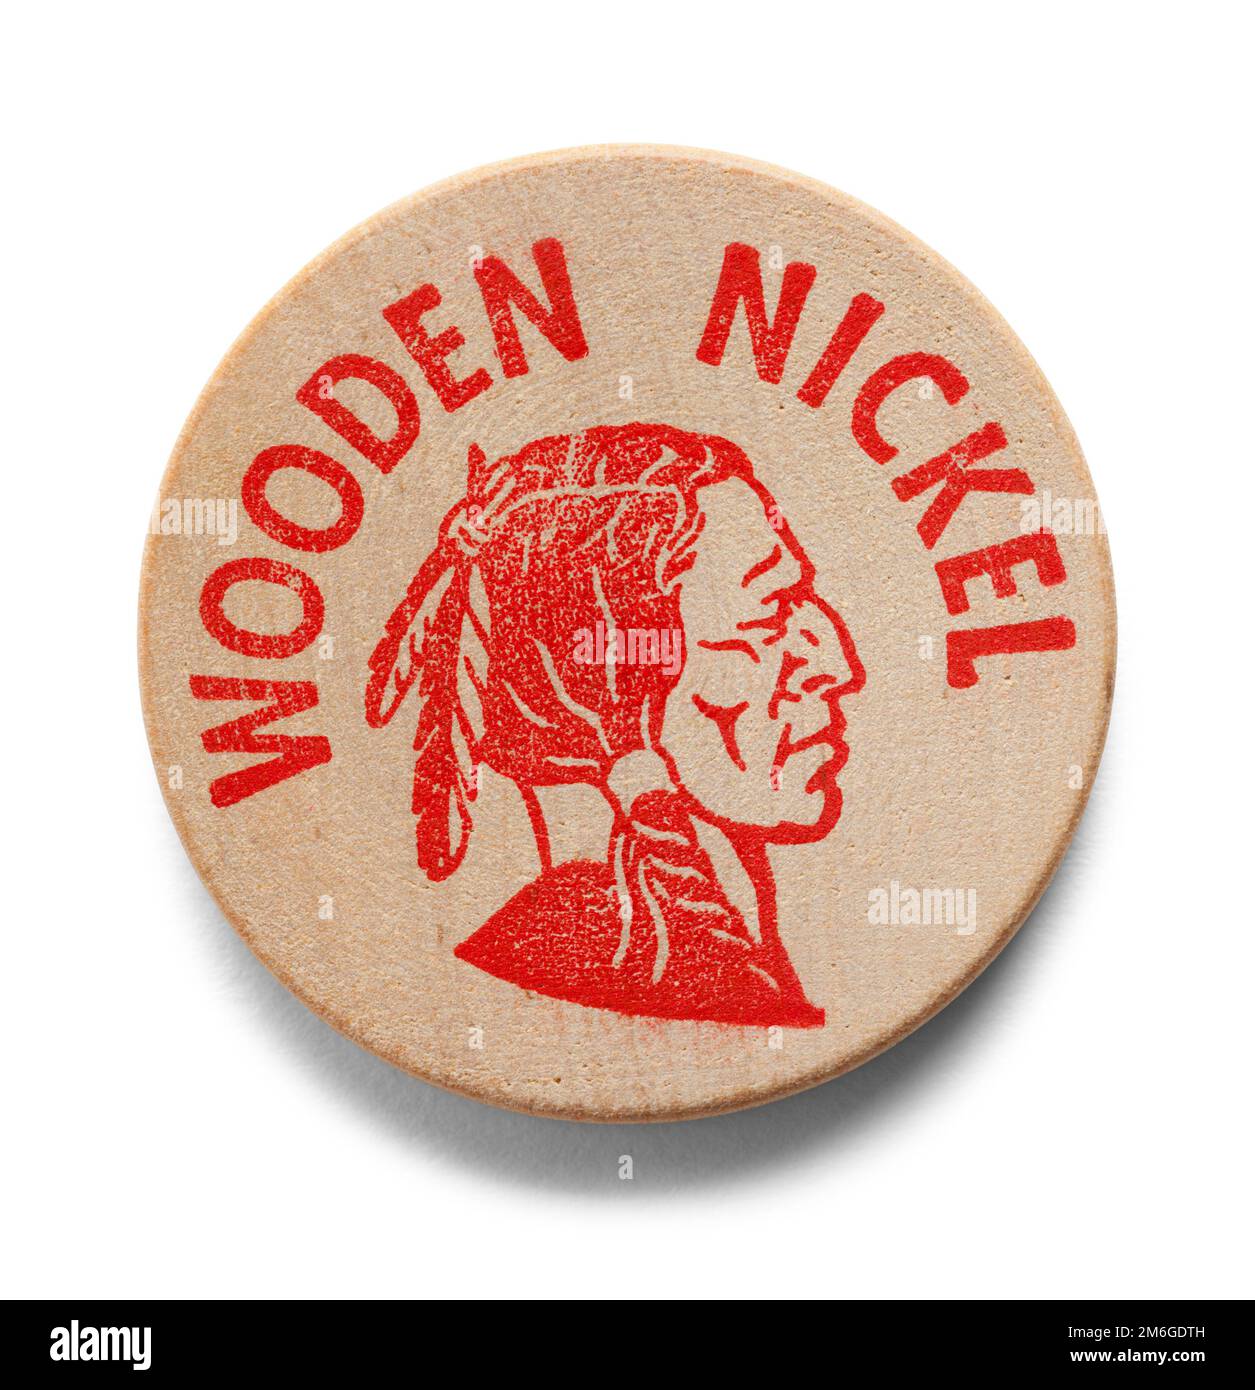 Holz-Nickel-Münze mit Indianerkopf auf Weiß ausgeschnitten. Stockfoto